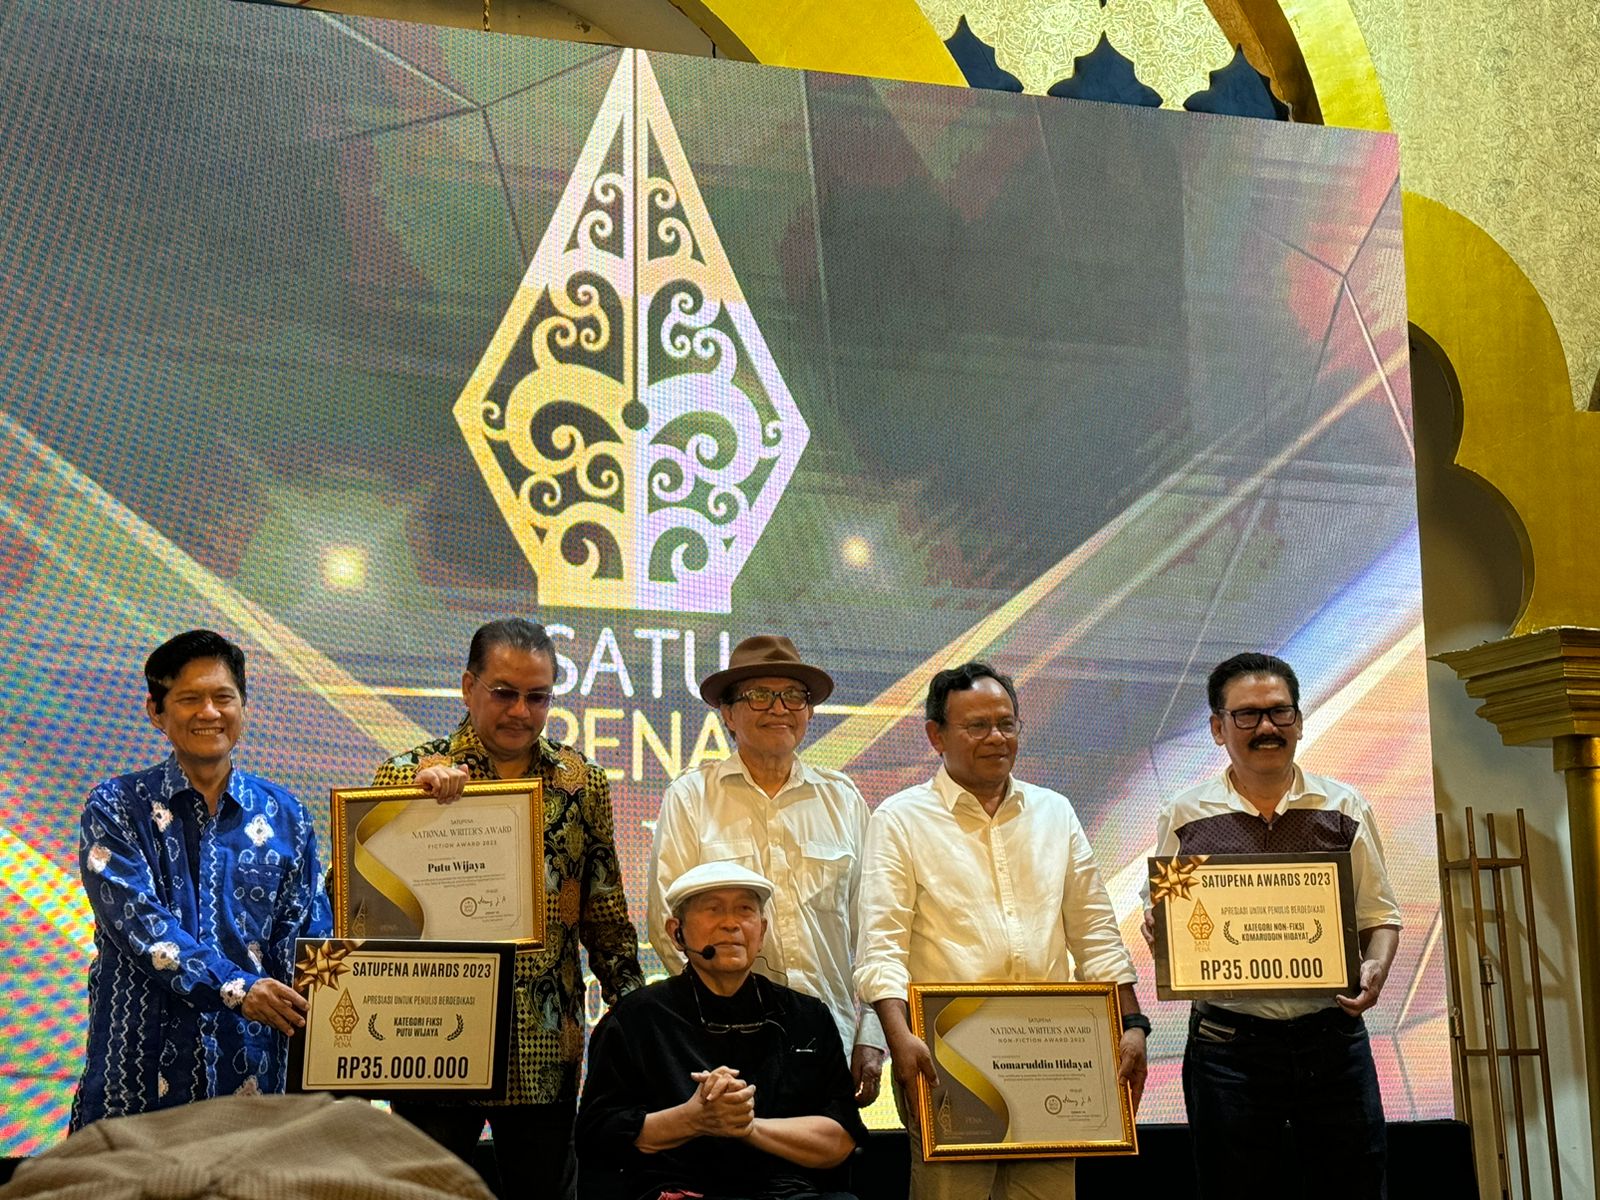 Penghargaan tertinggi Satupena disampaikan langsung oleh Ketua Umum Satupena Denny JA bersama pengurus, kepada Putu Wijaya dan Komaruddin Hidayat di Jakarta. Foto ist.